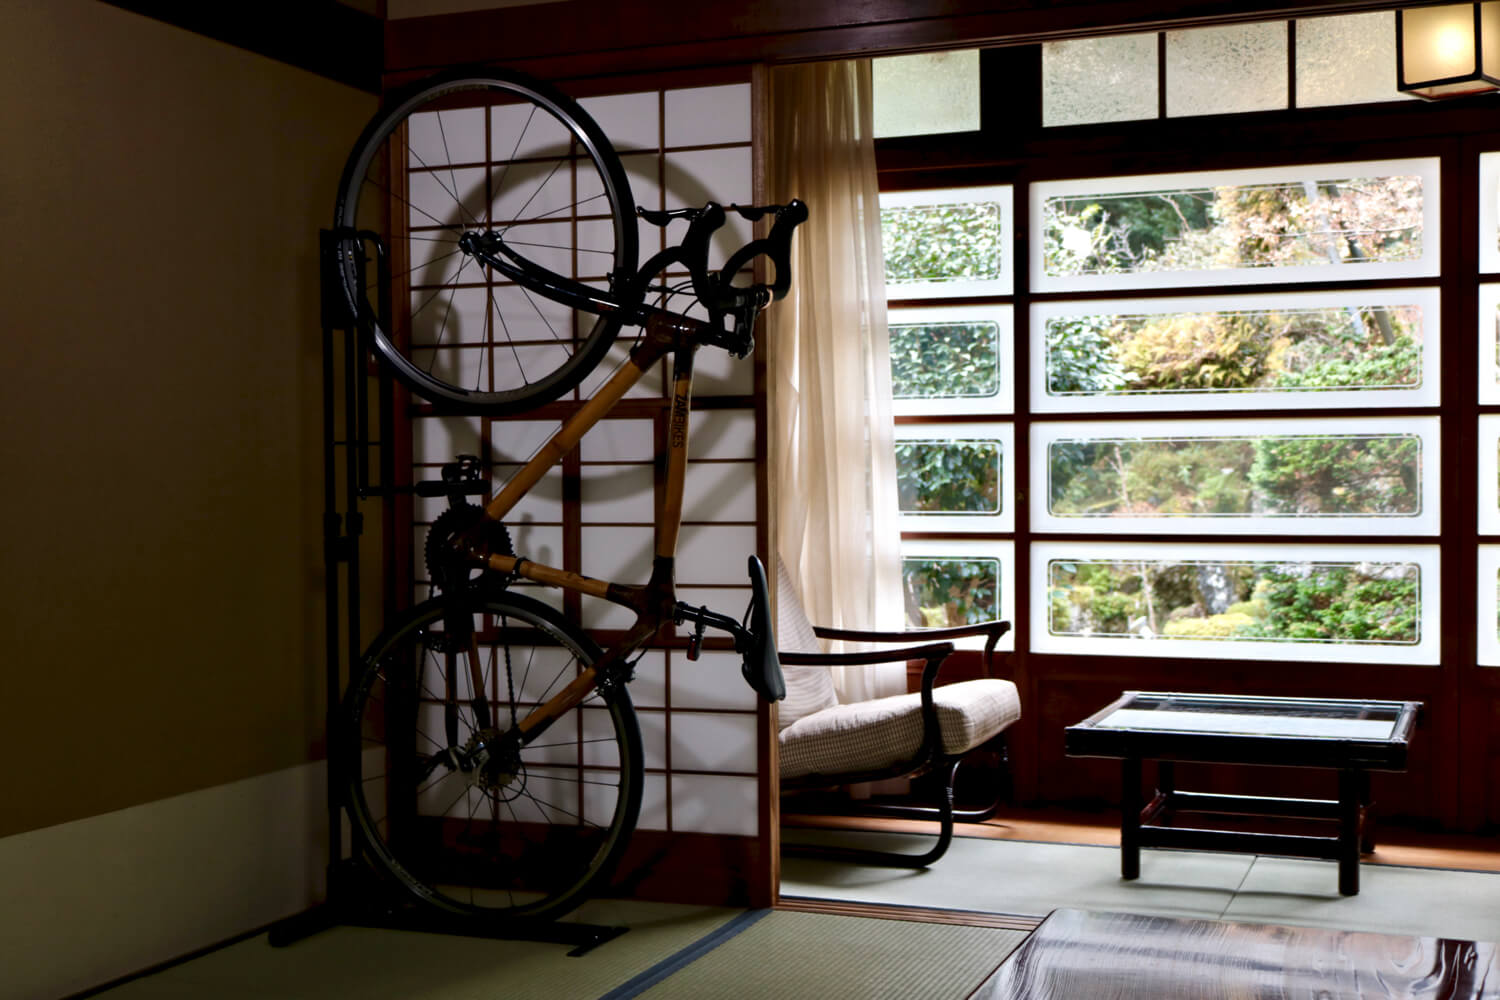 客室には自転車を持ち込むことも可能